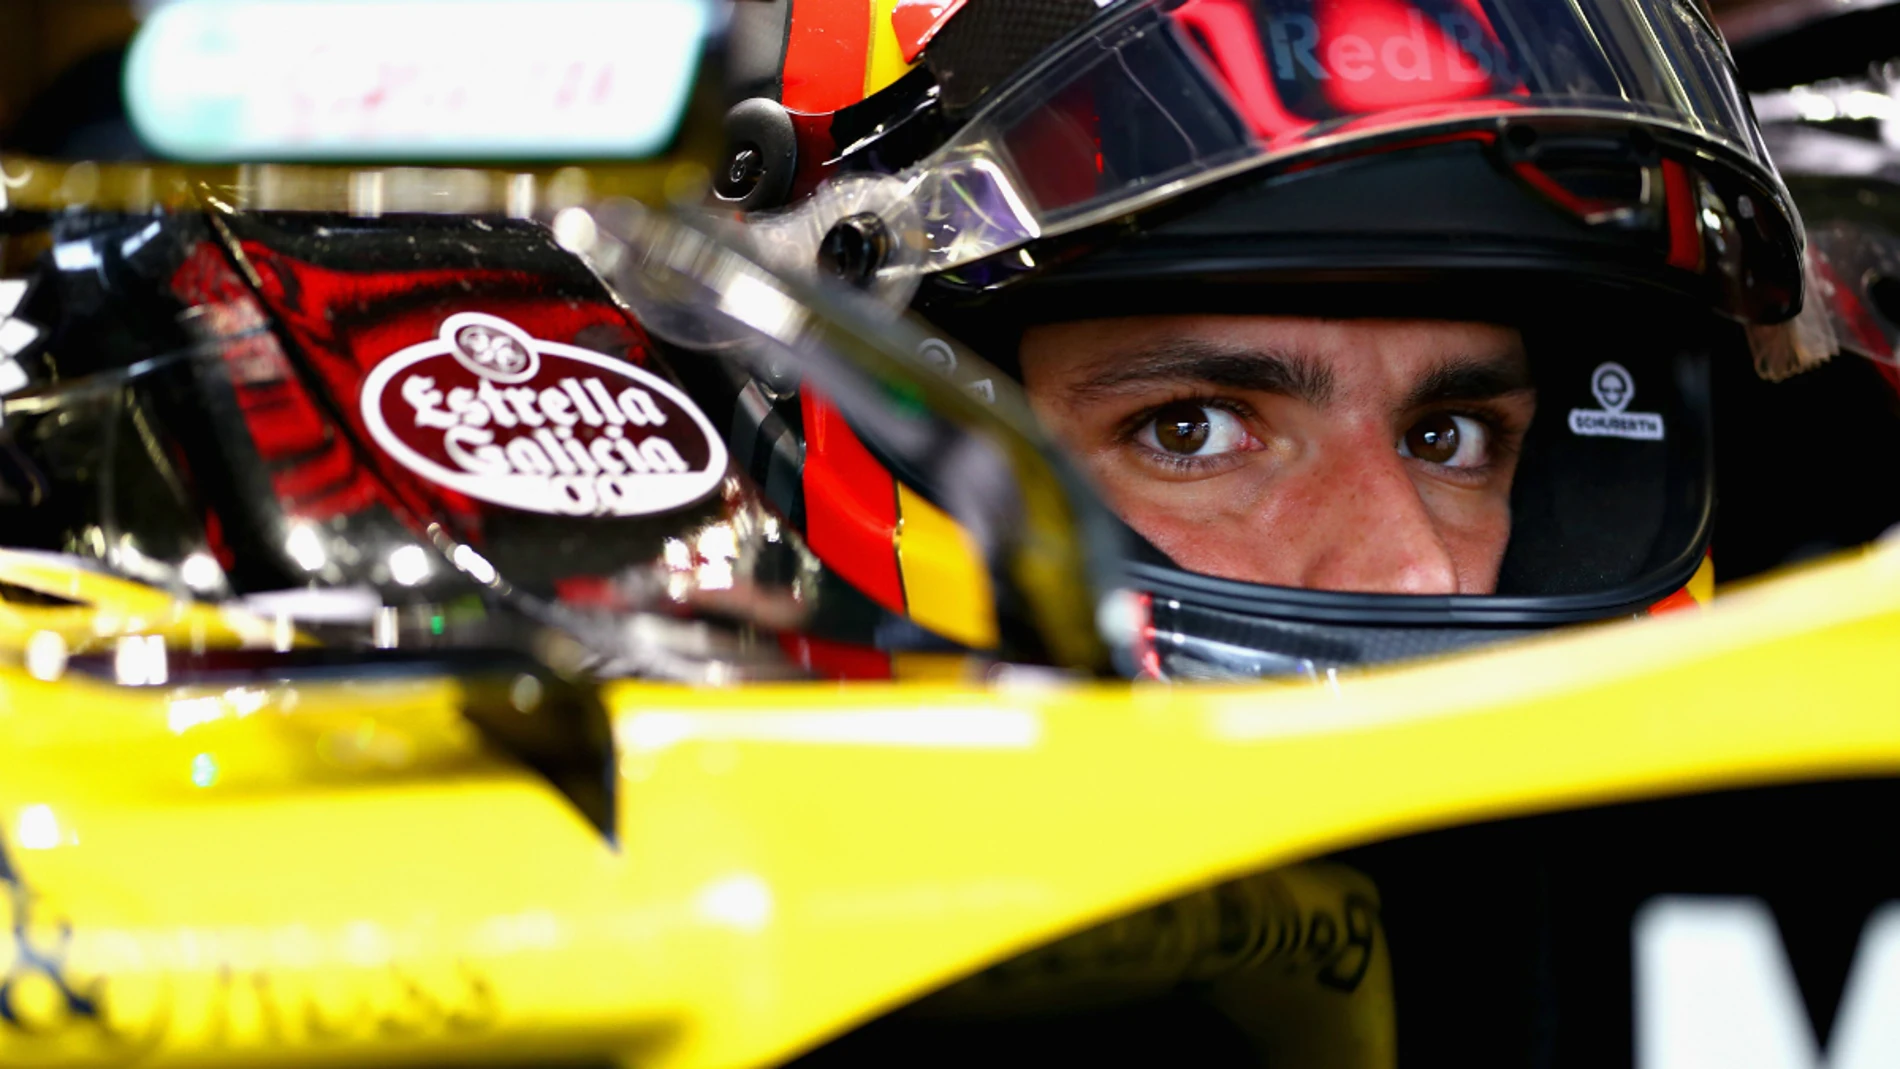 Carlos Sainz, en su cockpit